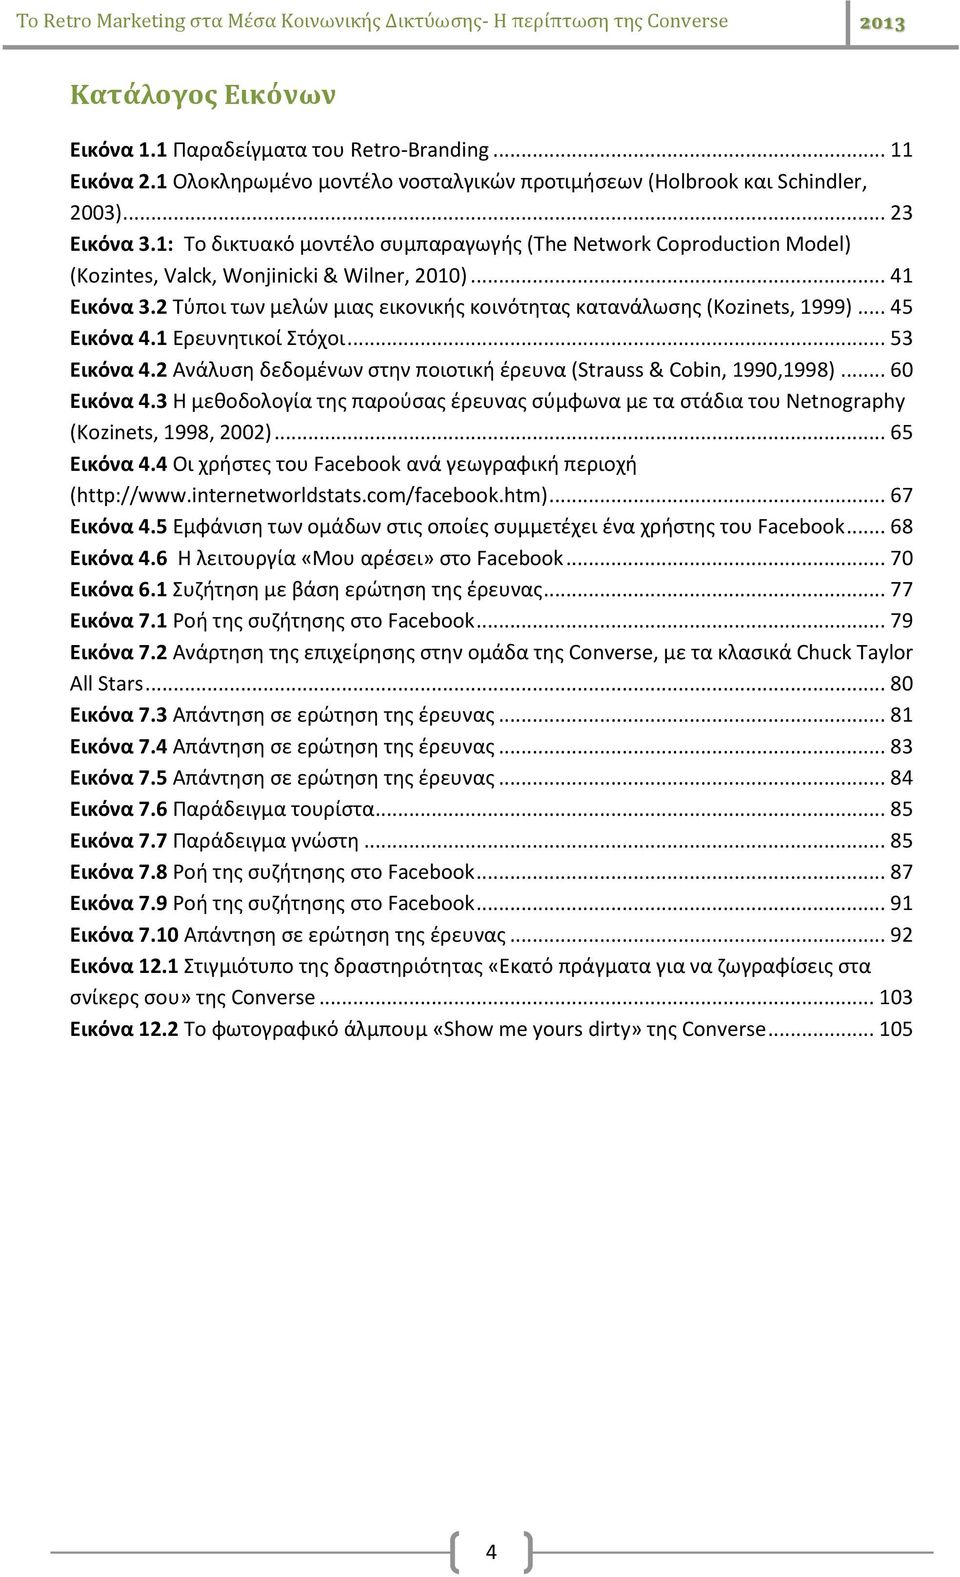 2 Τύποι των μελών μιας εικονικής κοινότητας κατανάλωσης (Kozinets, 1999)... 45 Εικόνα 4.1 Ερευνητικοί Στόχοι... 53 Εικόνα 4.2 Ανάλυση δεδομένων στην ποιοτική έρευνα (Strauss & Cobin, 1990,1998).